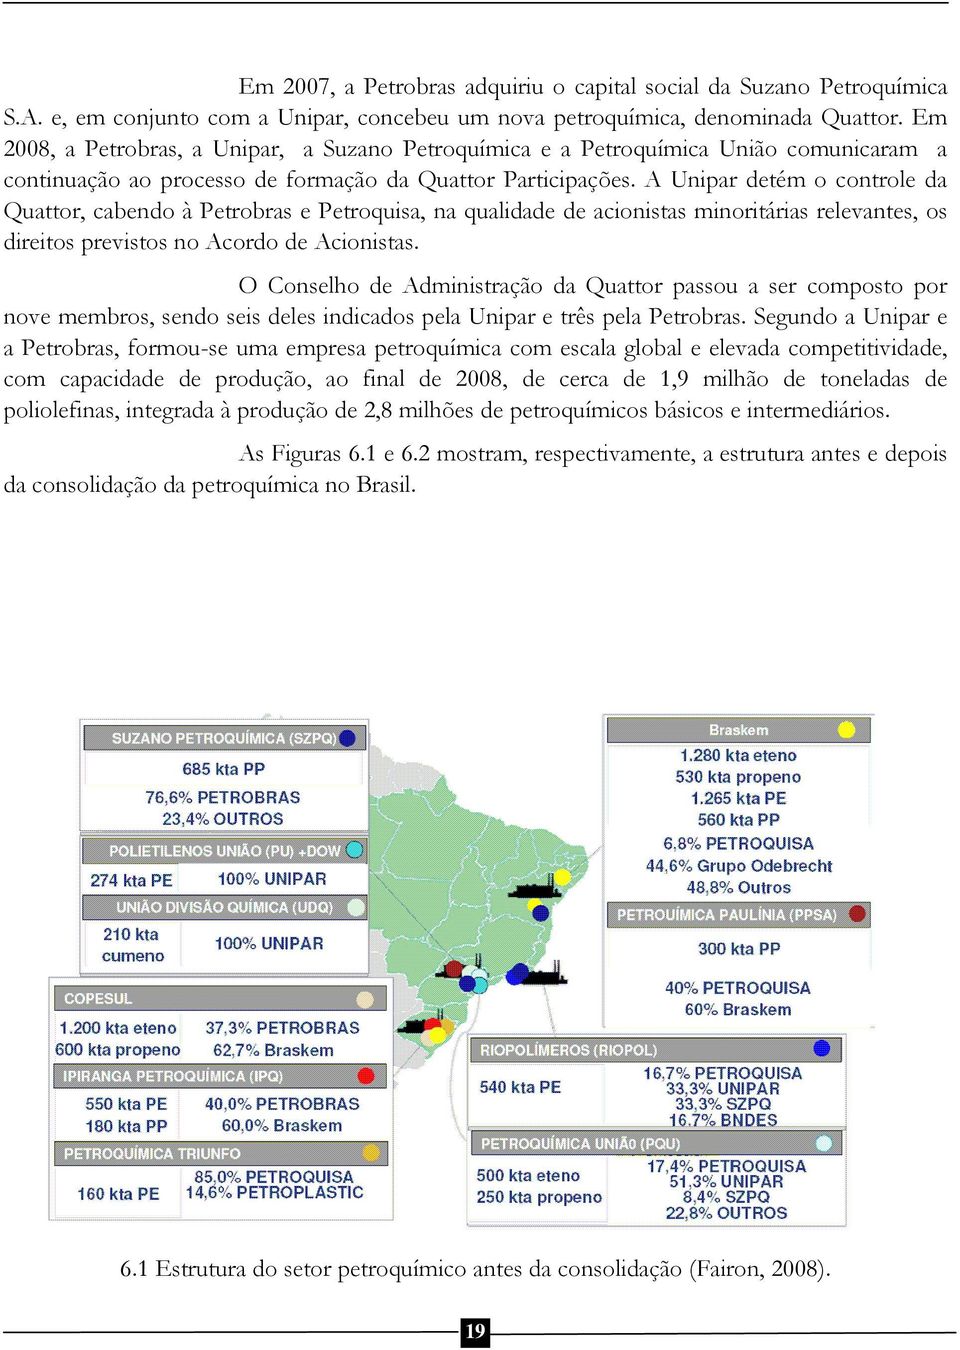 A Unipar detém o controle da Quattor, cabendo à Petrobras e Petroquisa, na qualidade de acionistas minoritárias relevantes, os direitos previstos no Acordo de Acionistas.